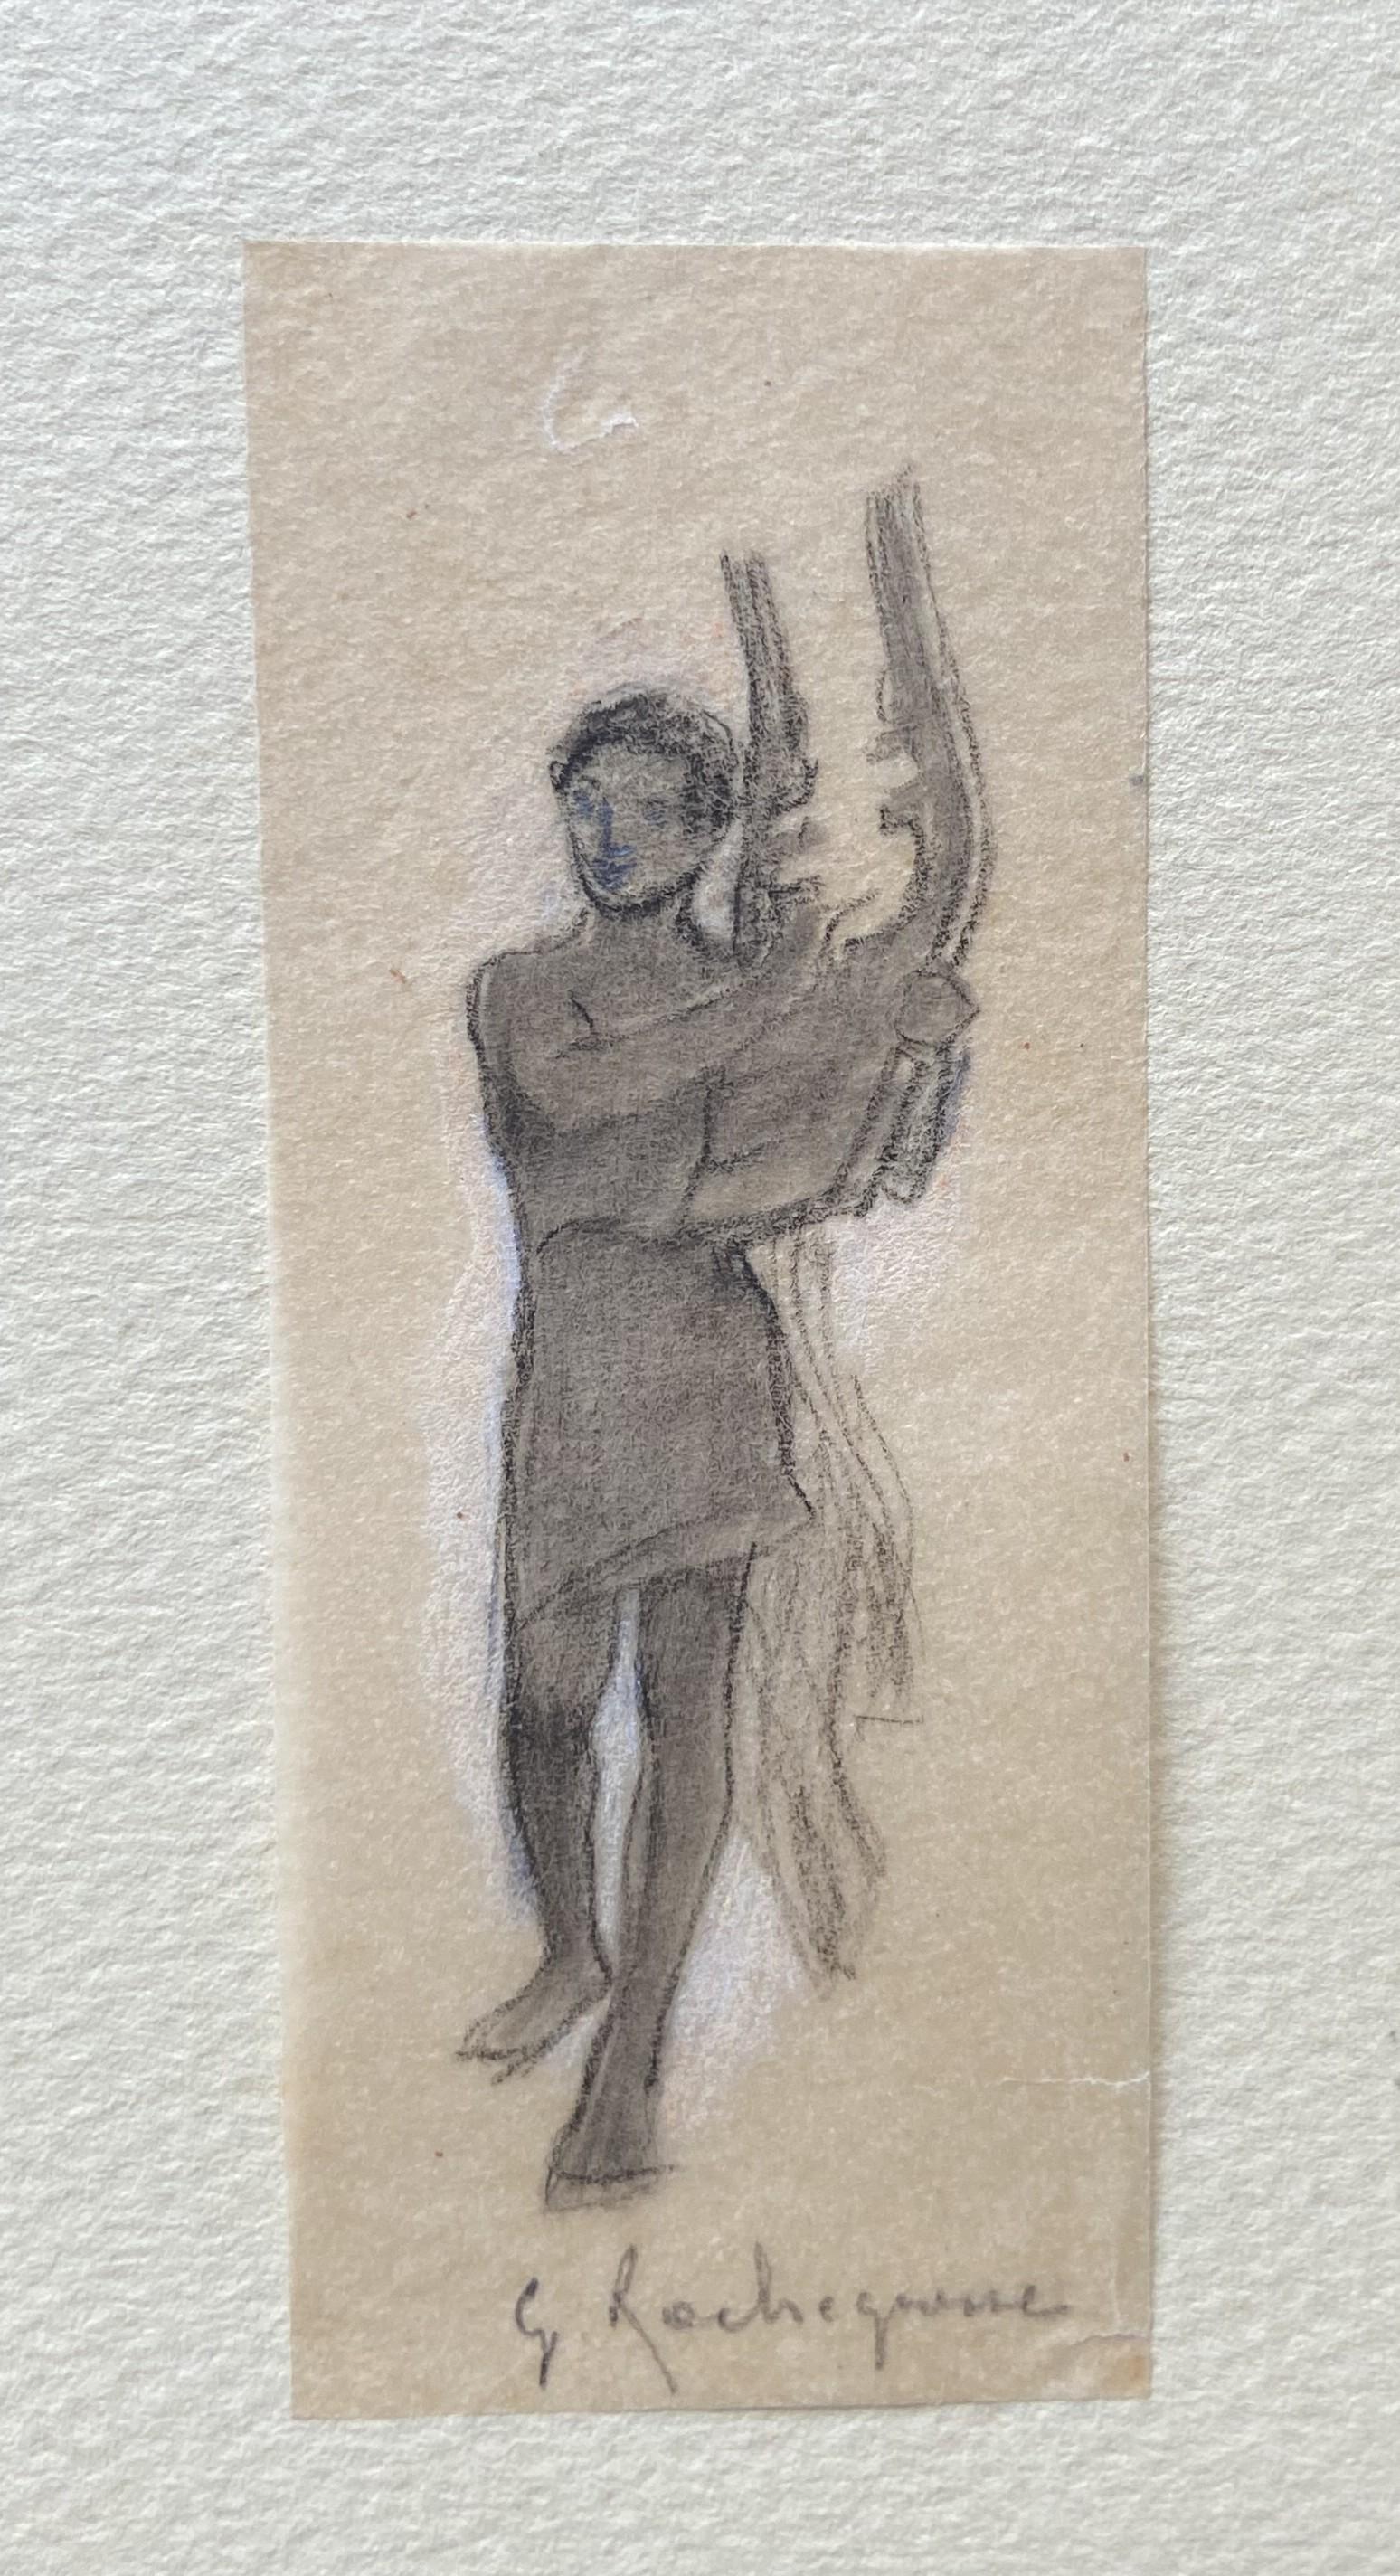 Georges Antoine Rochegrosse  (1859-1938) 
Ein Zitherspieler
Kohlestift auf dünnem Papier
8.5 x 3.3 cm
In gutem Zustand
Gerahmt : 35 x 24 cm
Provenienz: Nachlass des Künstlers und durch Vererbung an den früheren Besitzer

Diese winzige Zeichnung ist